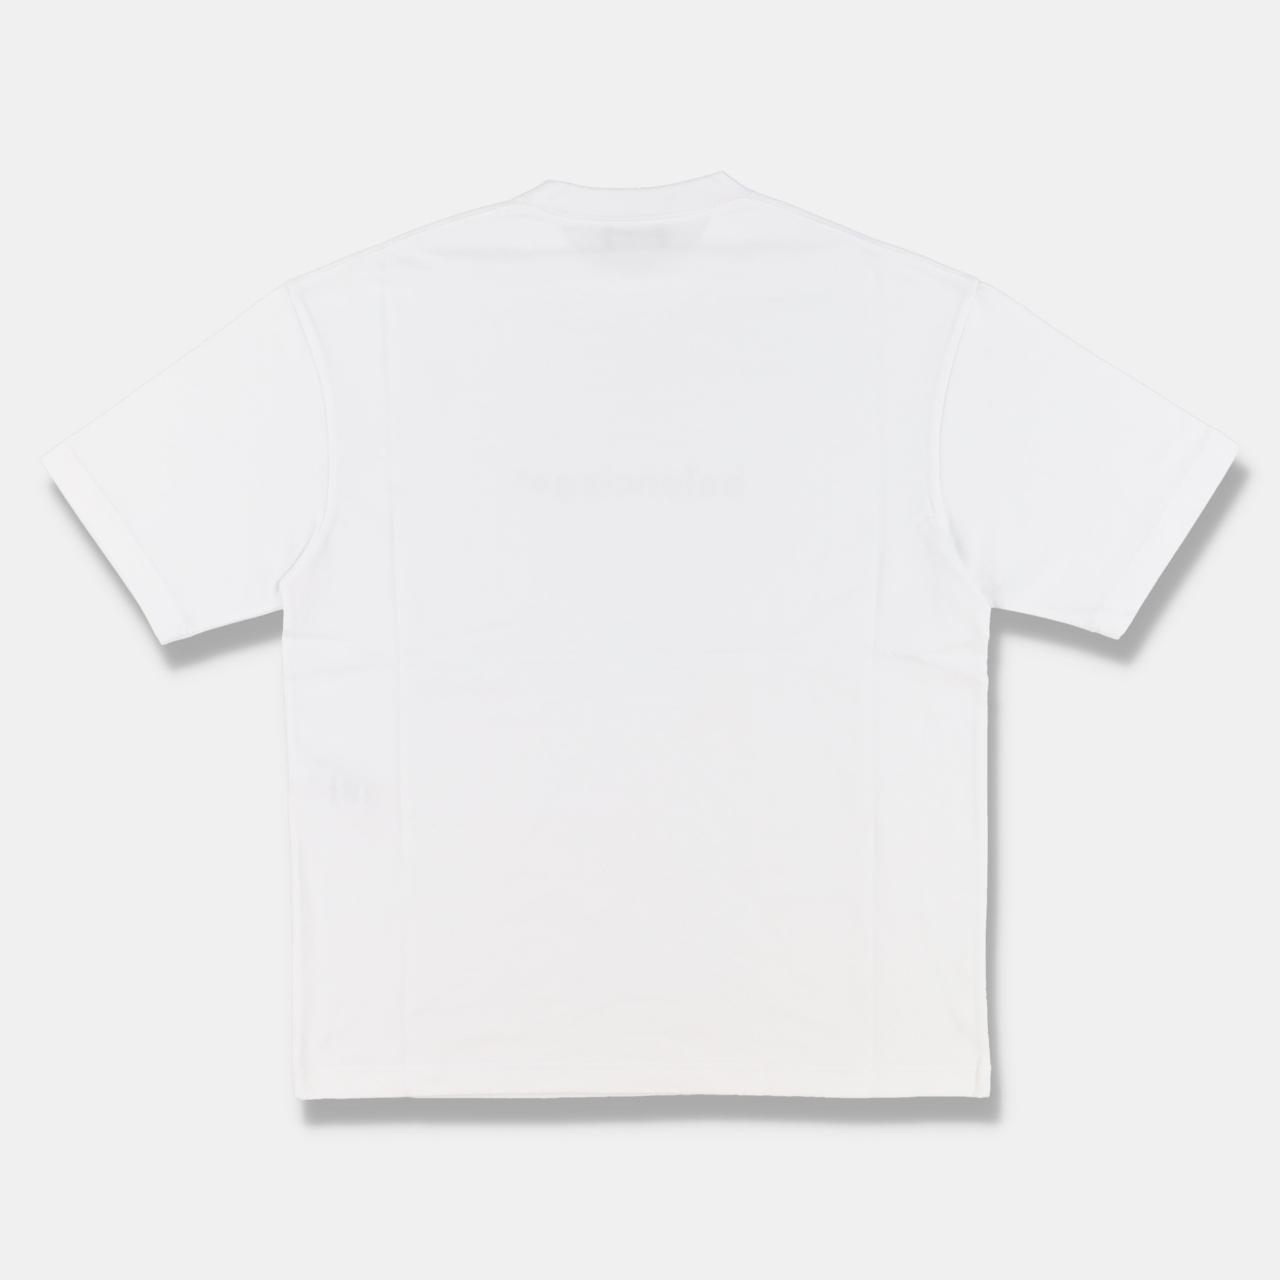 Product Image 4 - Balenciaga White Copyright Logo T-Shirt

-Size